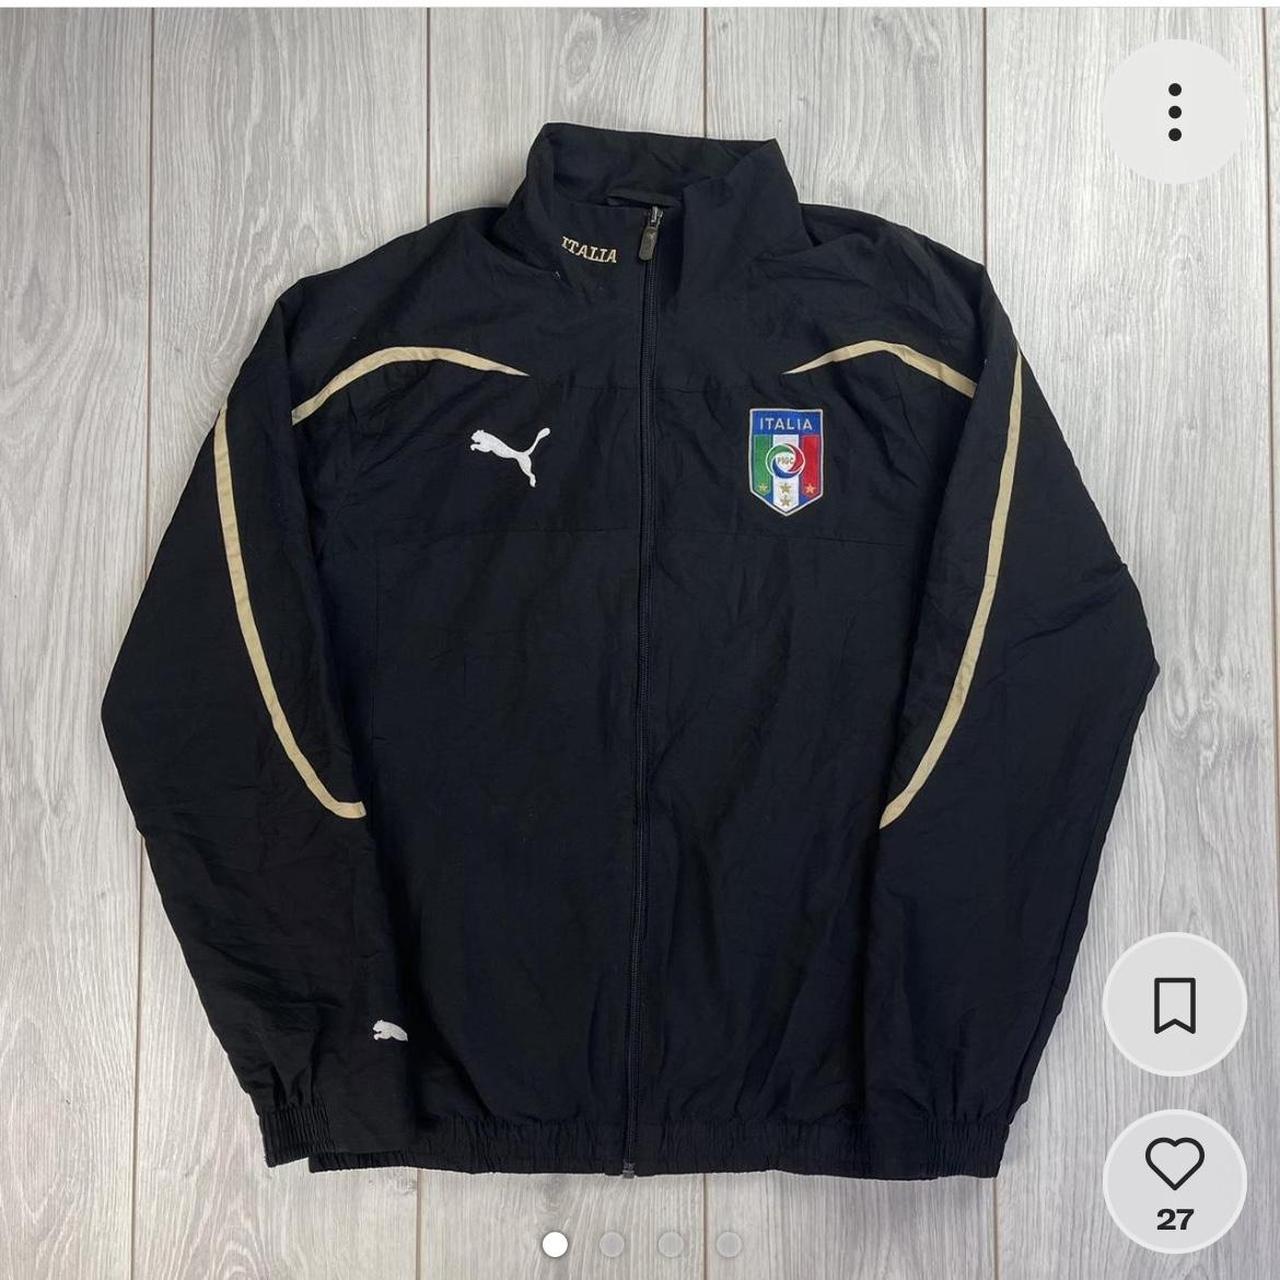 Vintage Puma Italian Football Team a Jacket Black... - Depop